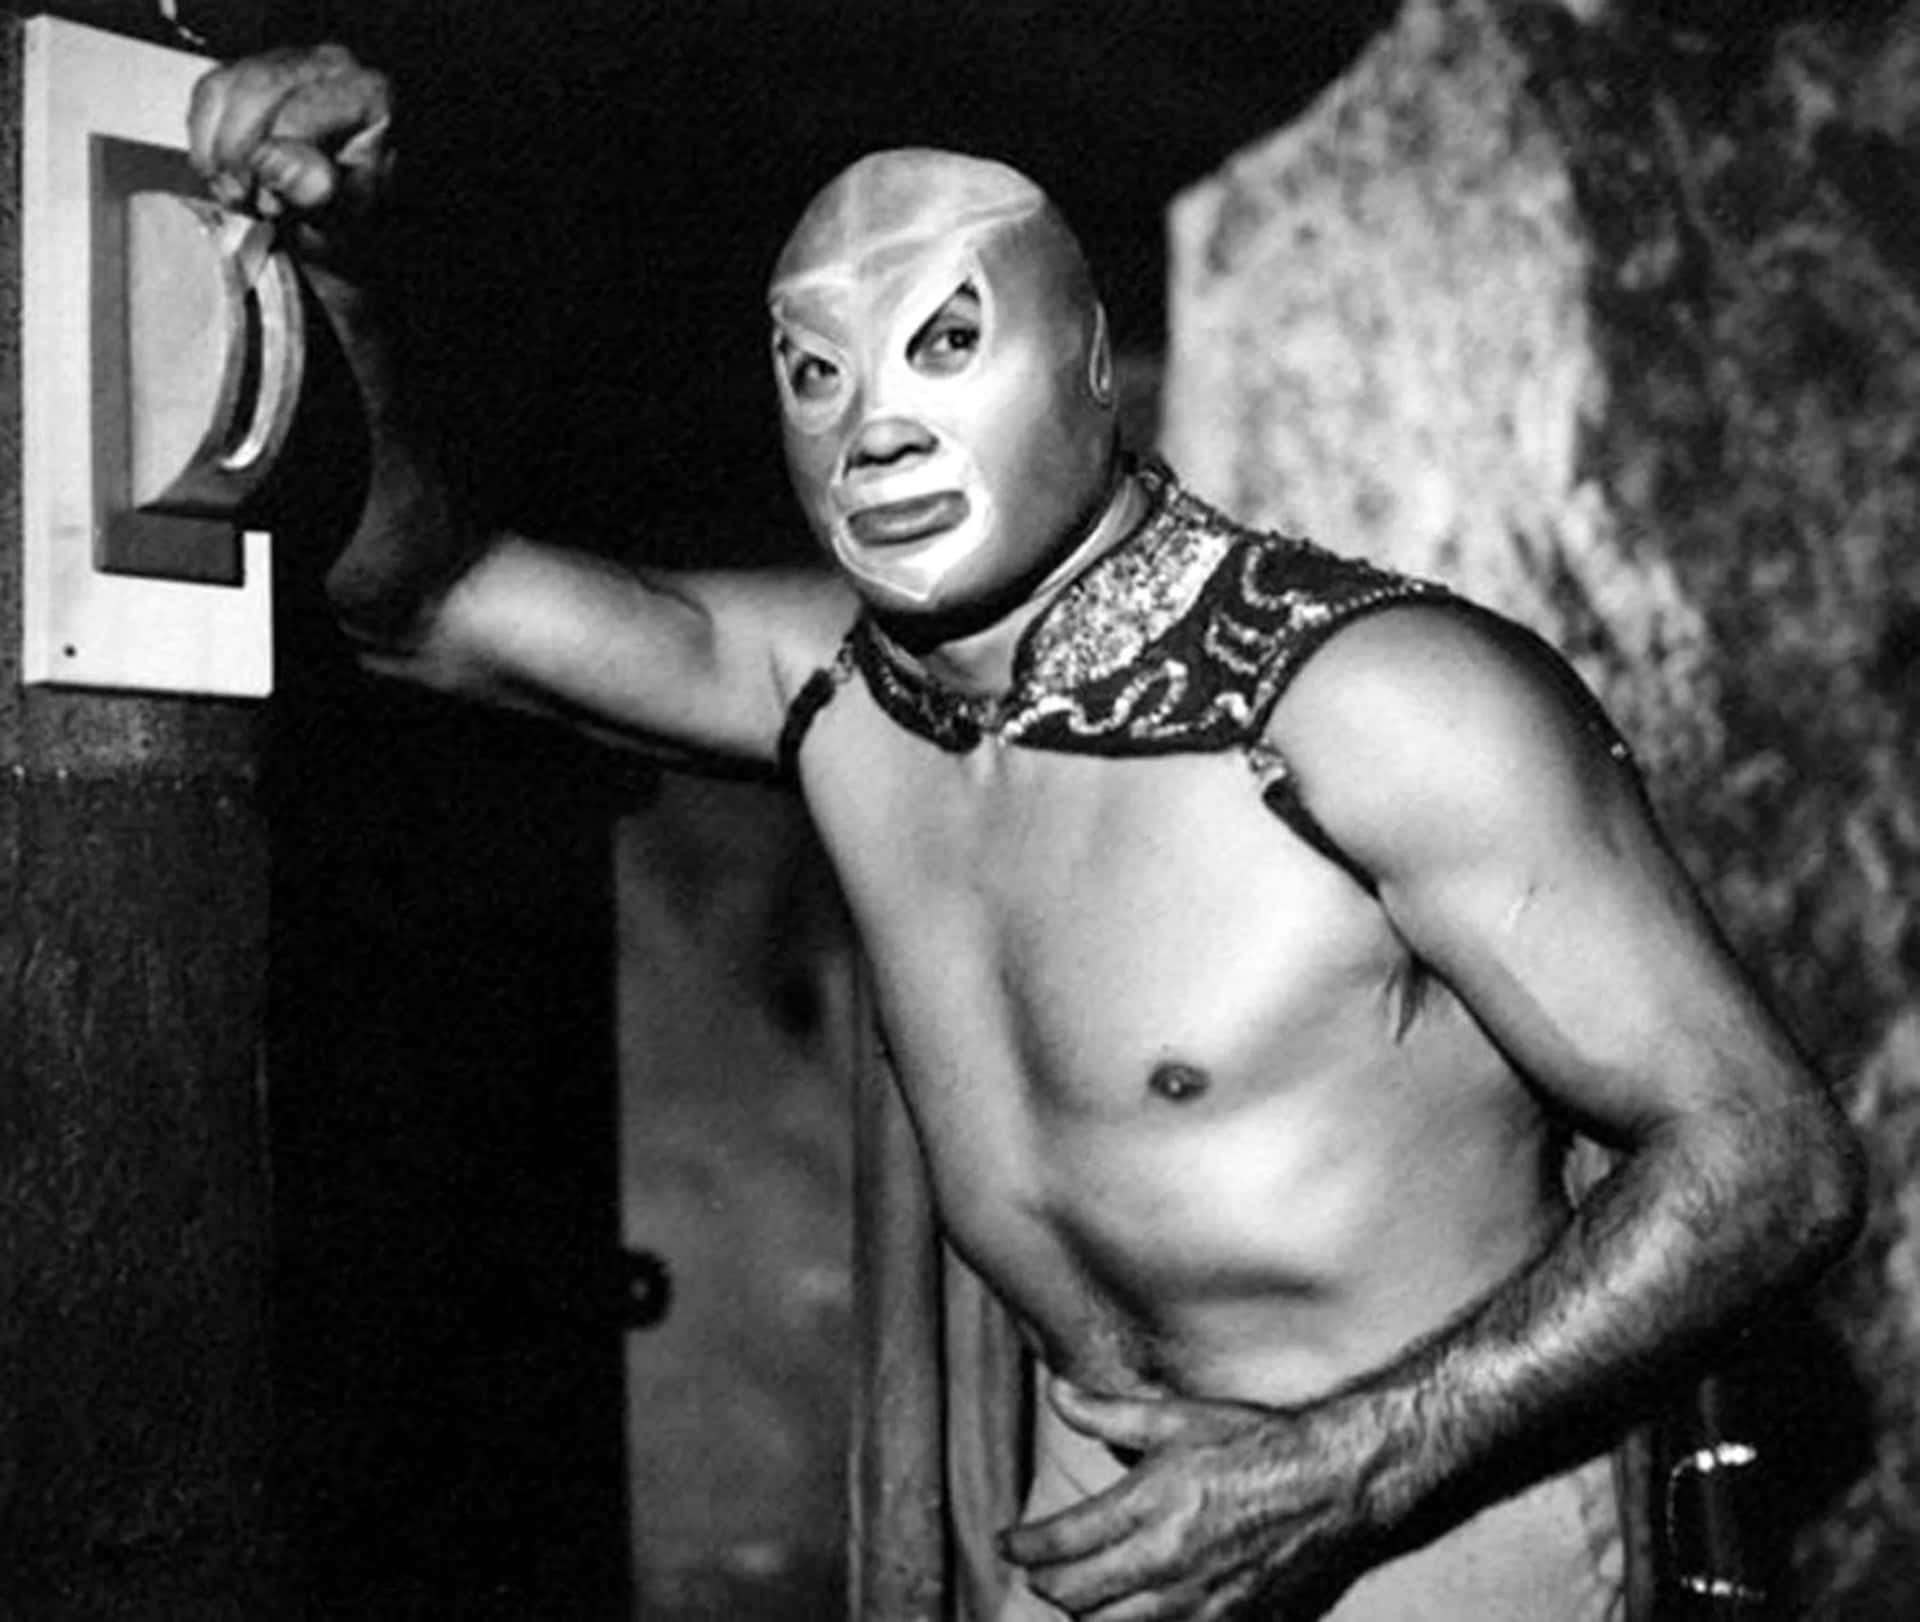 Mexican Masked Wrestler El Santo Wallpaper